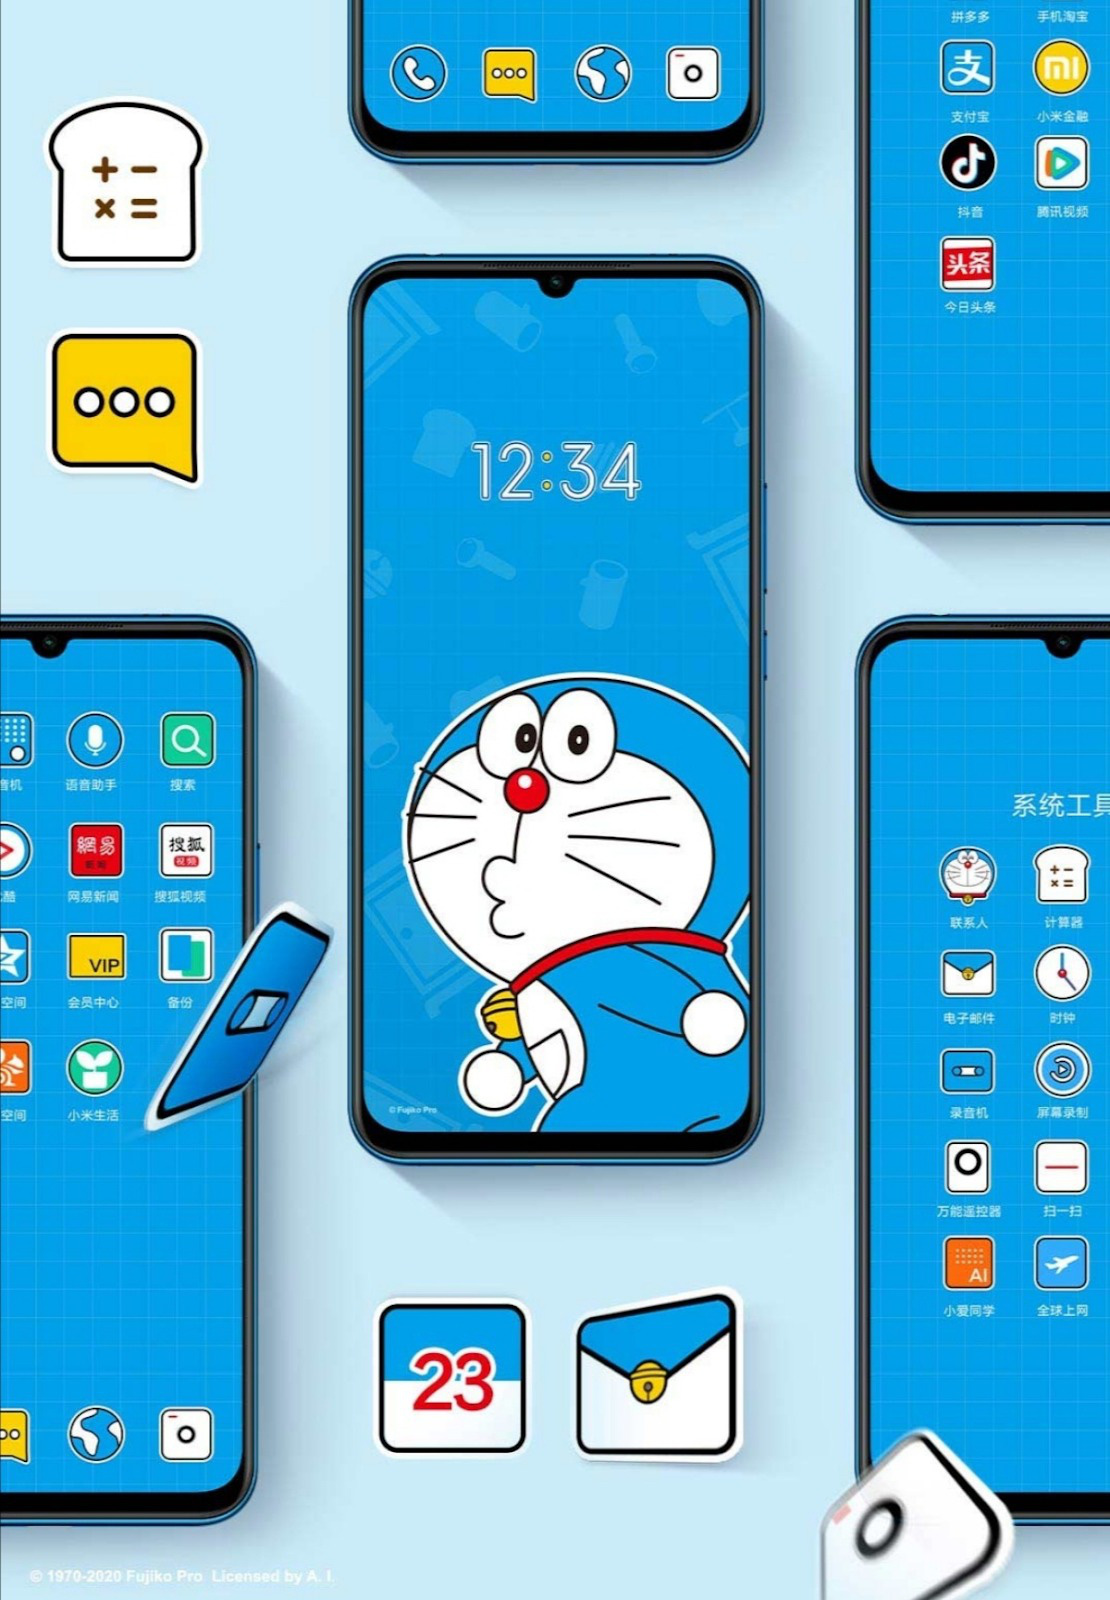 Xiaomi: Đây là những hình ảnh về Xiaomi – một trong những thương hiệu điện thoại được yêu thích nhất hiện nay. Hãy xem để tìm hiểu lý do tại sao những chiếc điện thoại Xiaomi lại được hưởng ứng tích cực như vậy.